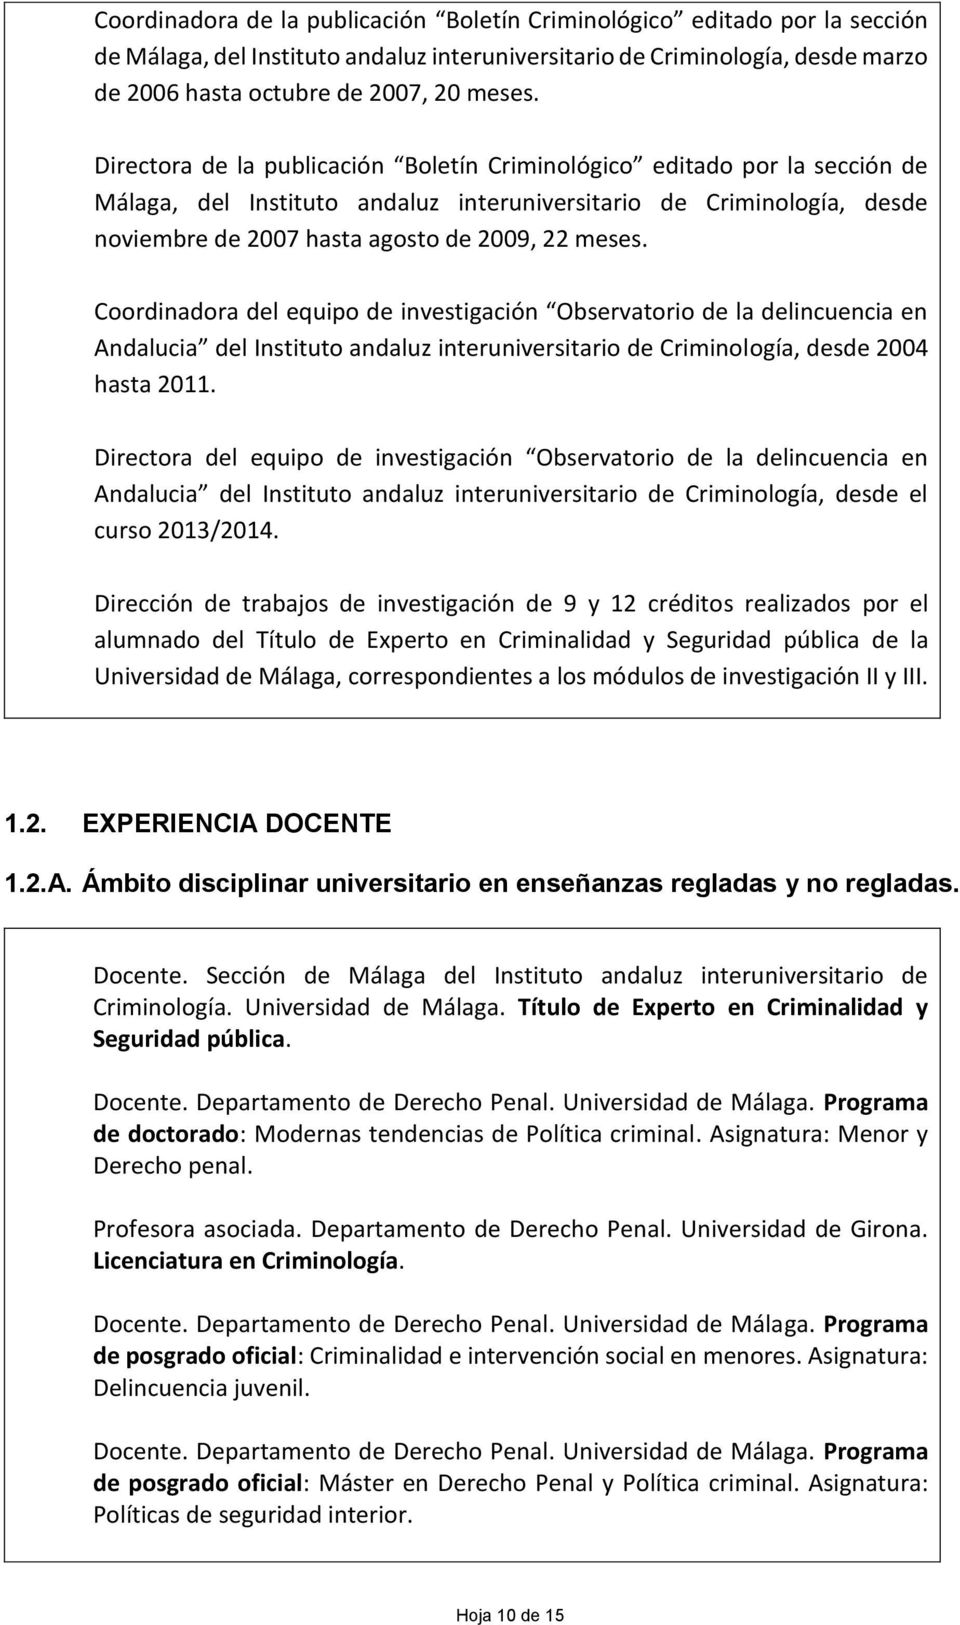 Coordinadora del equipo de investigación Observatorio de la delincuencia en Andalucia del Instituto andaluz interuniversitario de Criminología, desde 2004 hasta 2011.